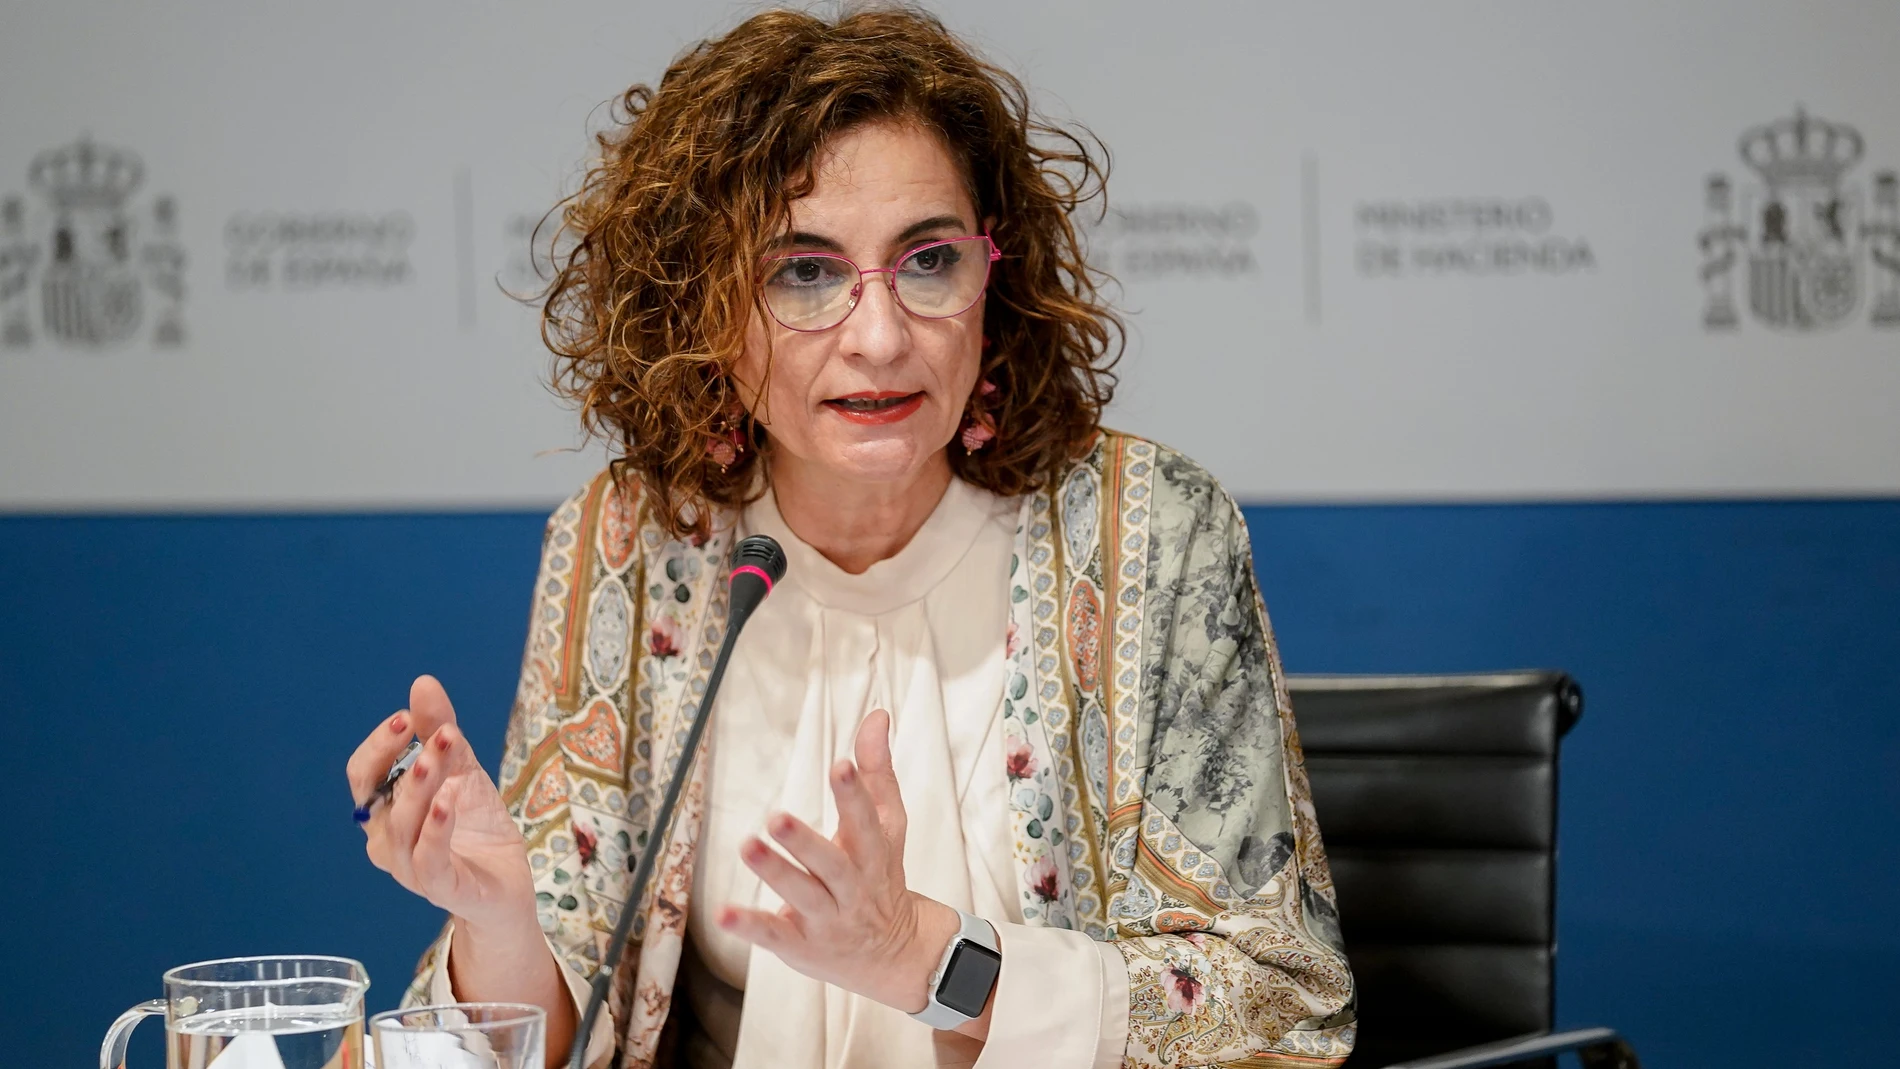 La ministra de Hacienda, María Jesús Montero, durante la presentación de las proyecciones de déficit incluidas en el Programa de Estabilidad 2021-2024, en la sede del Ministerio